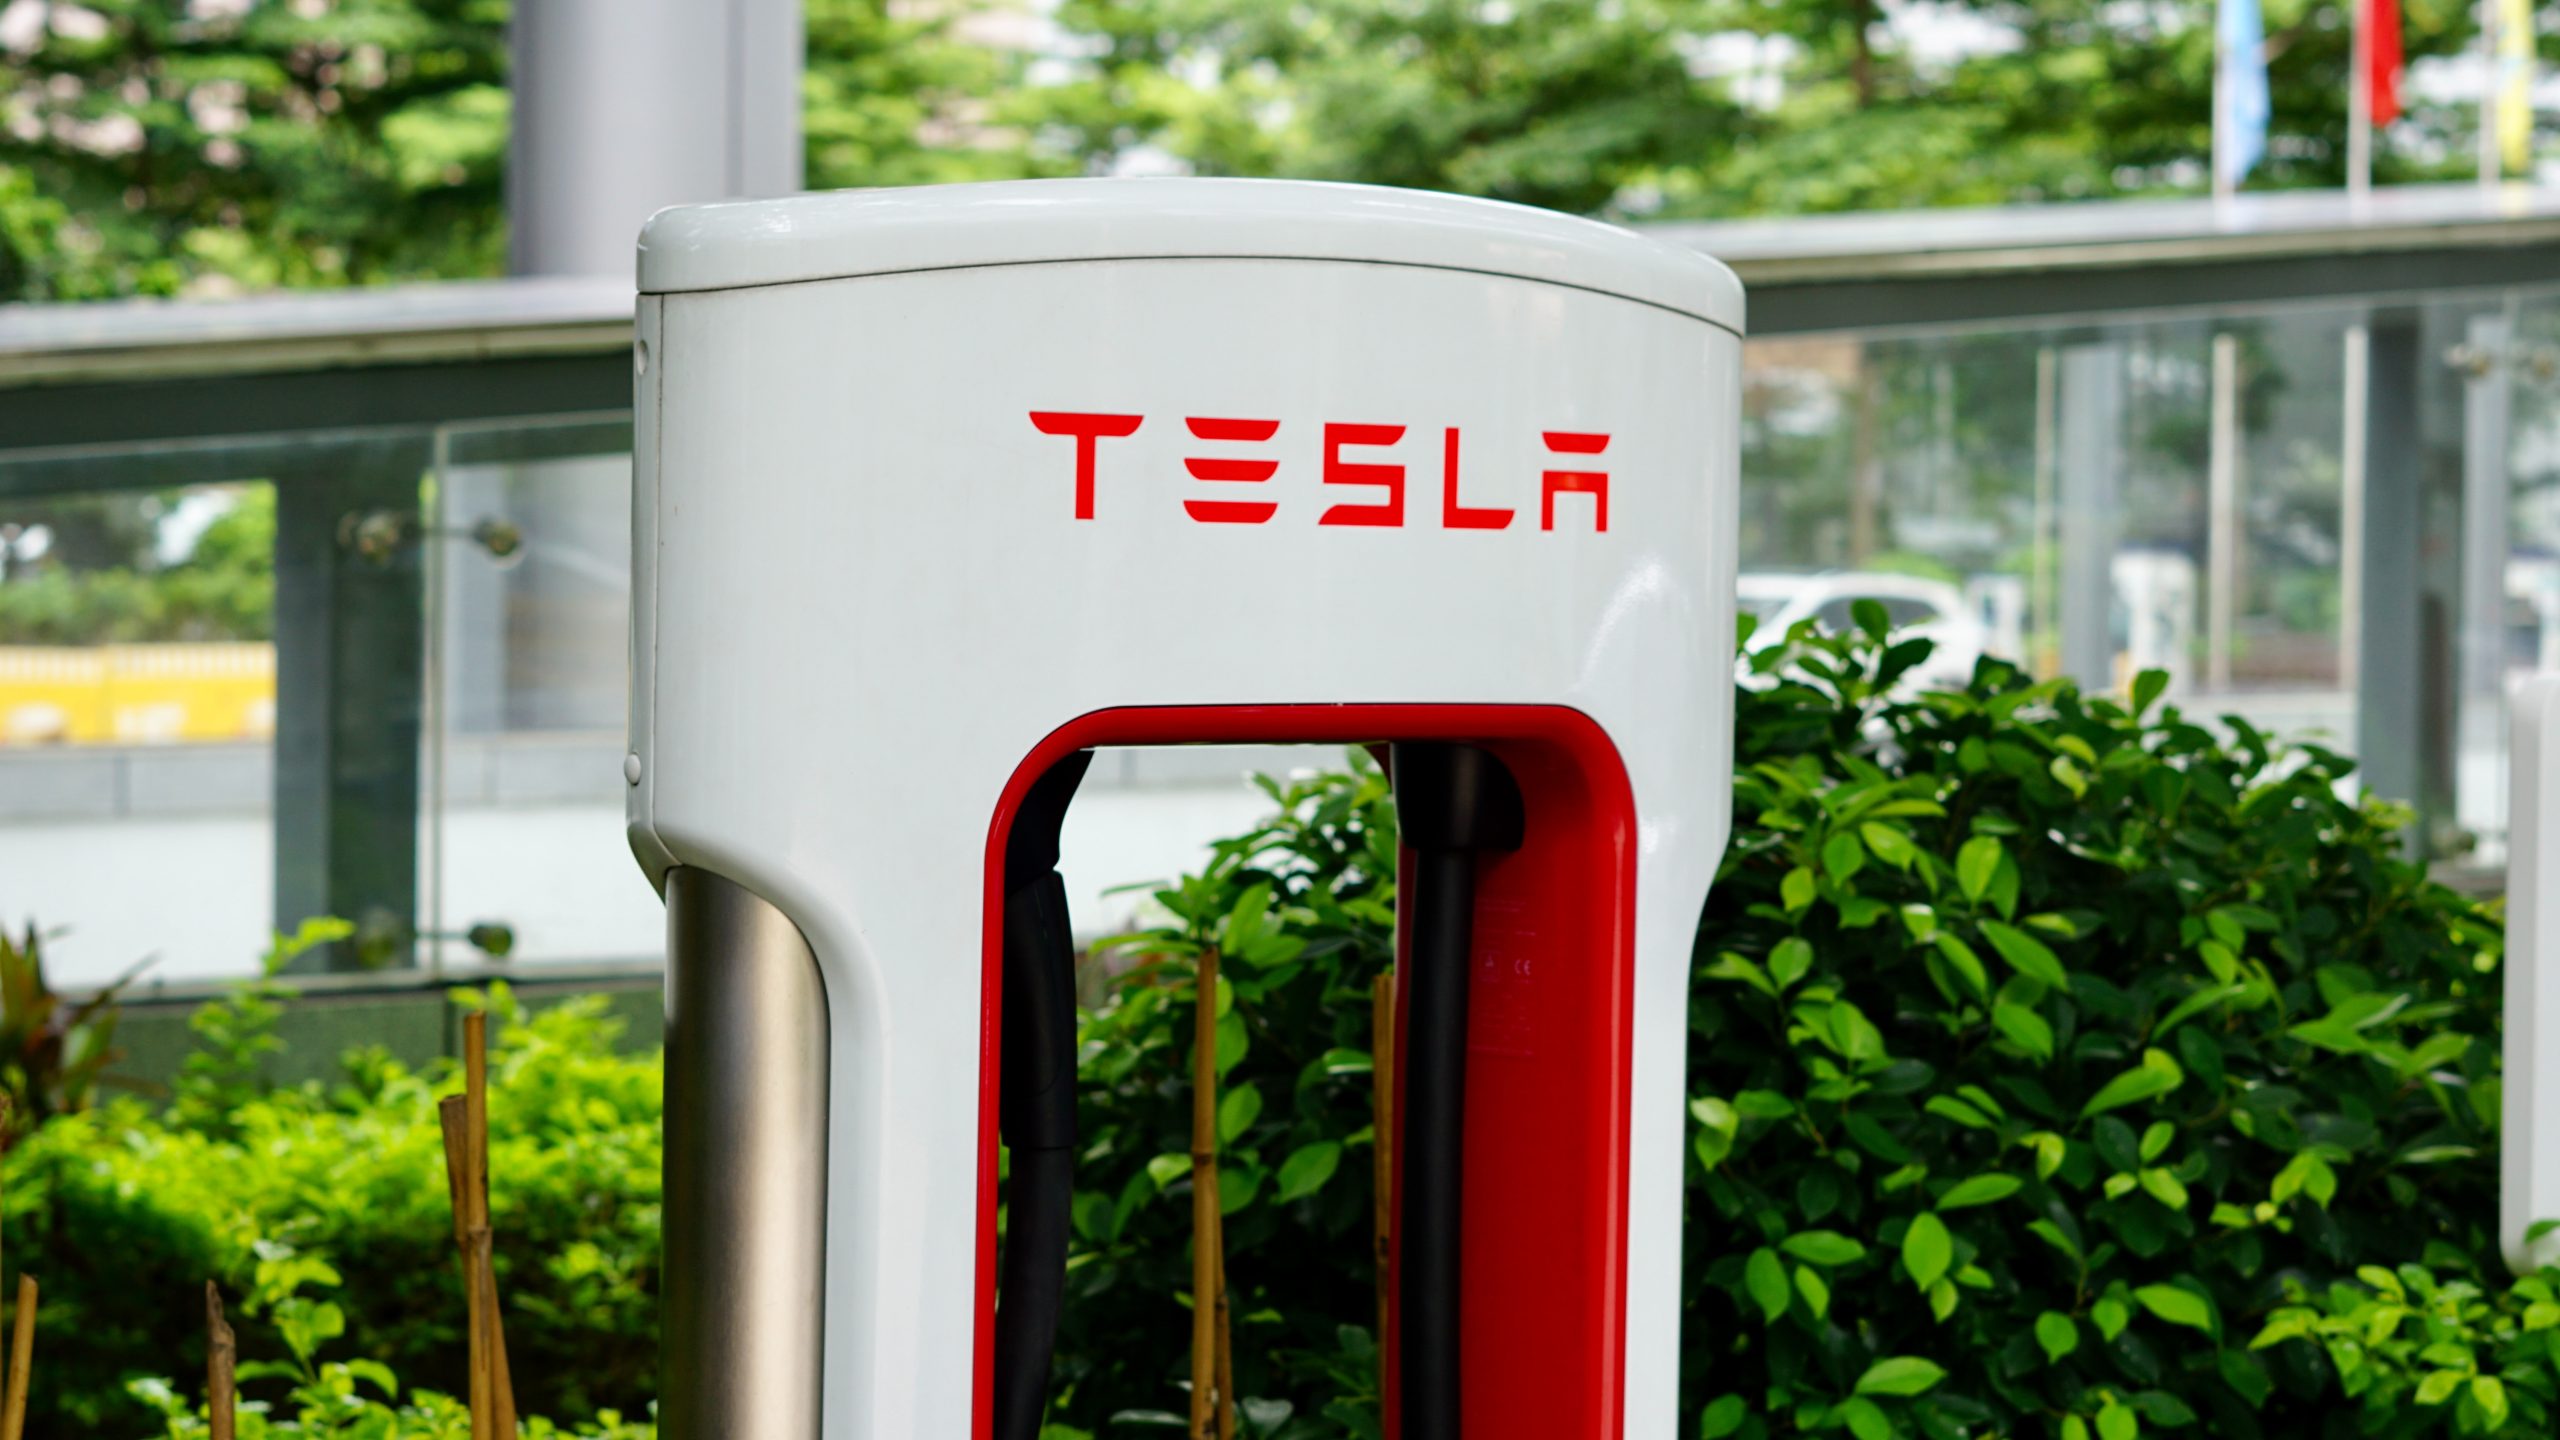 Borne de supercharge Tesla pour notre service de VTC rennes